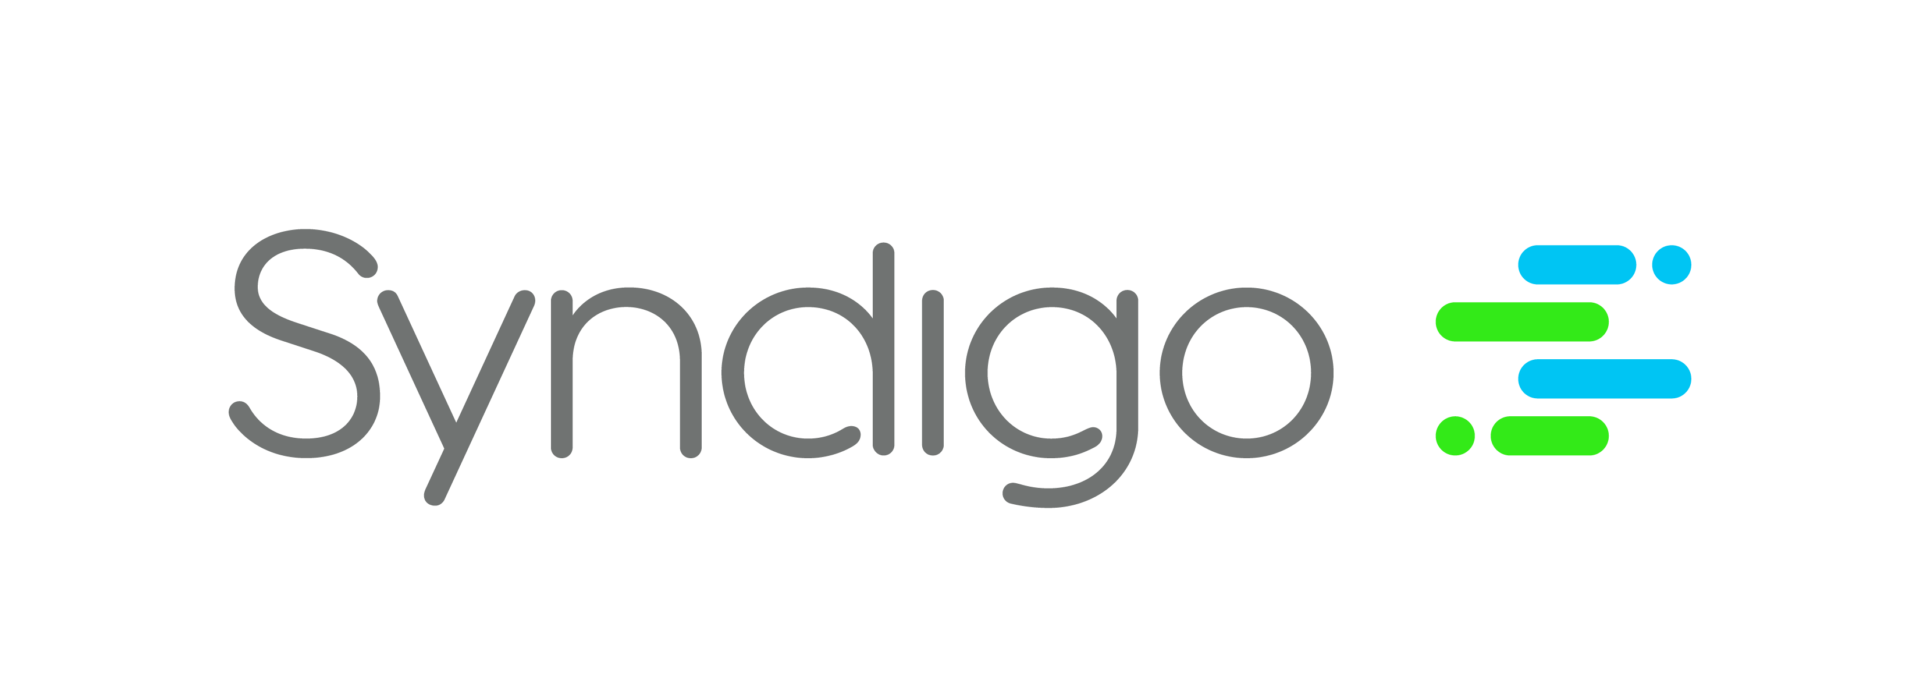 Syndigo Technology Partner